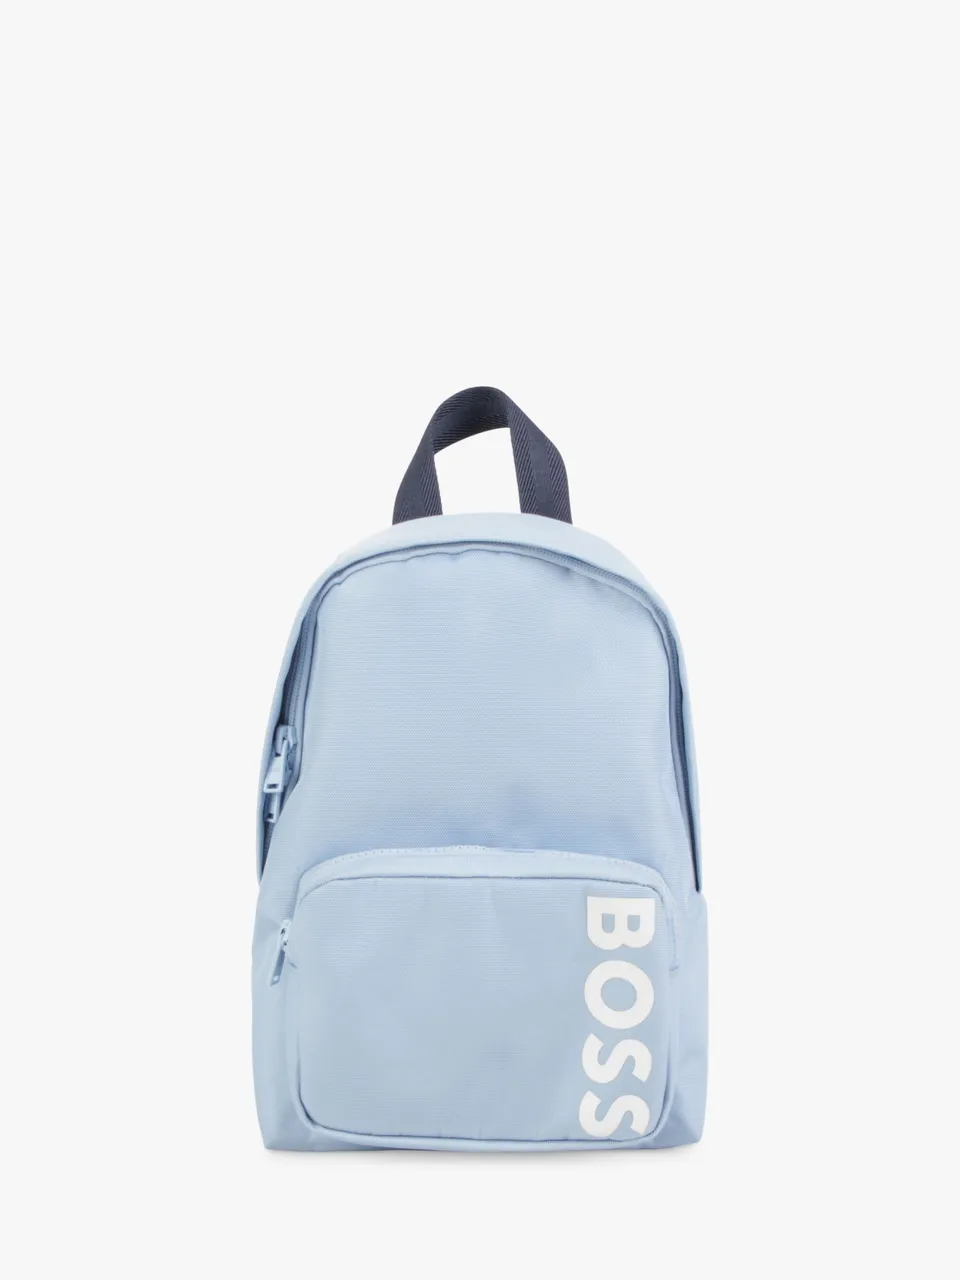 Hugo Boss BOSS Baby Small Logo Backpack, Blue - Blue - Unisex